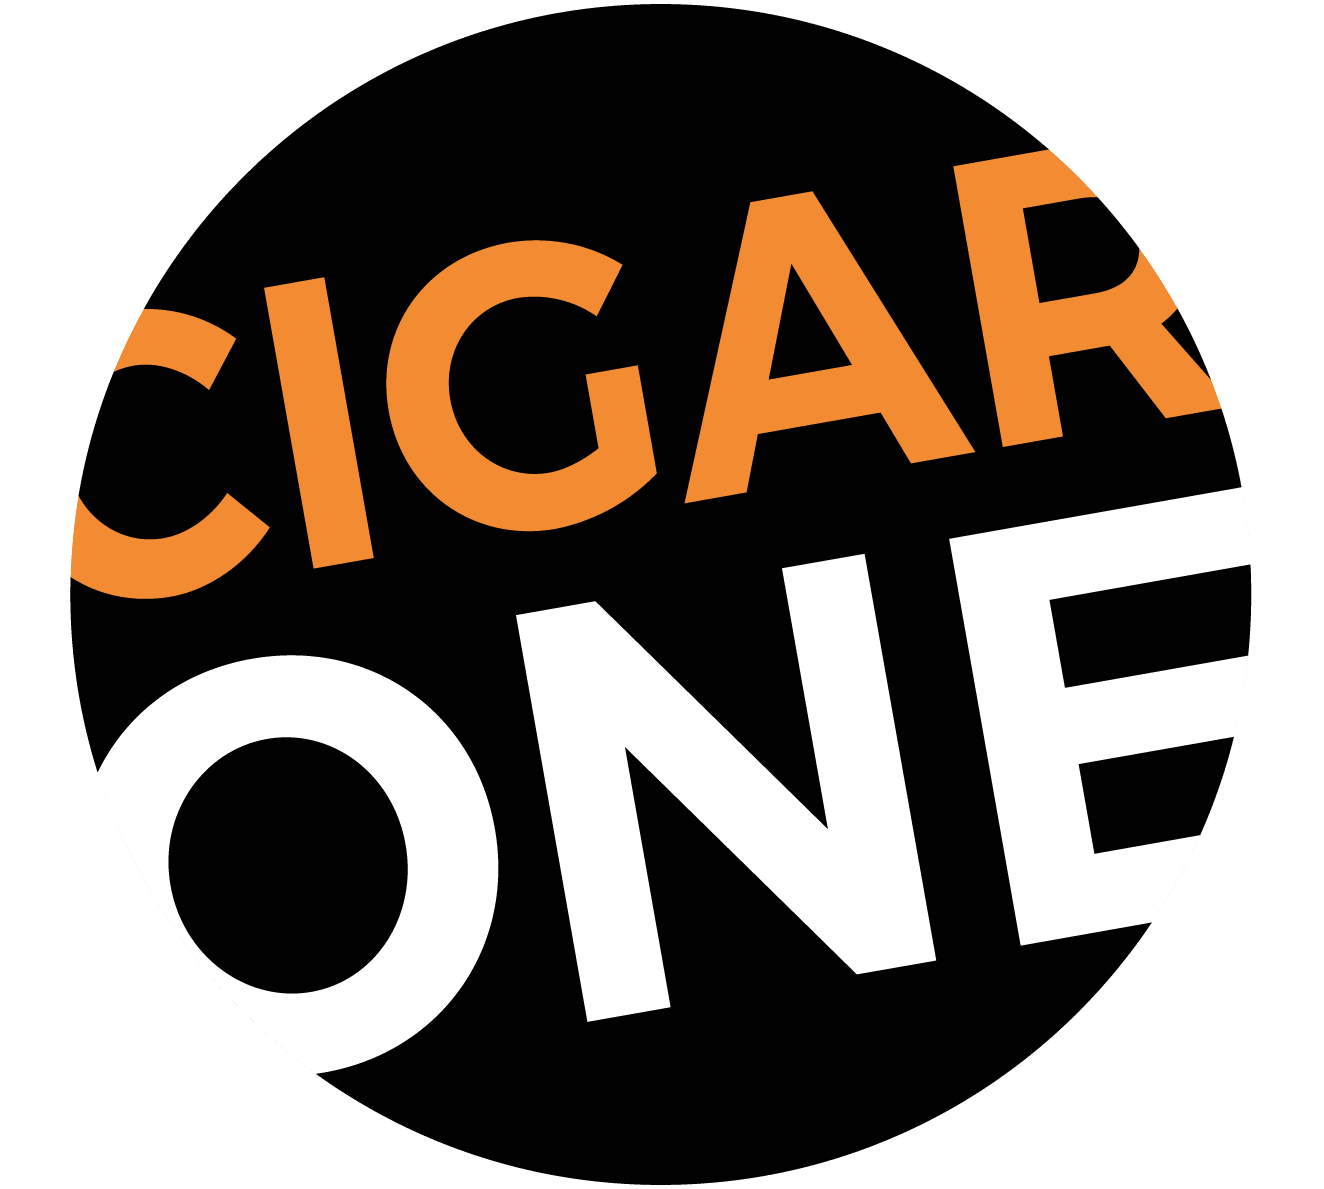 (c) Cigarone.com